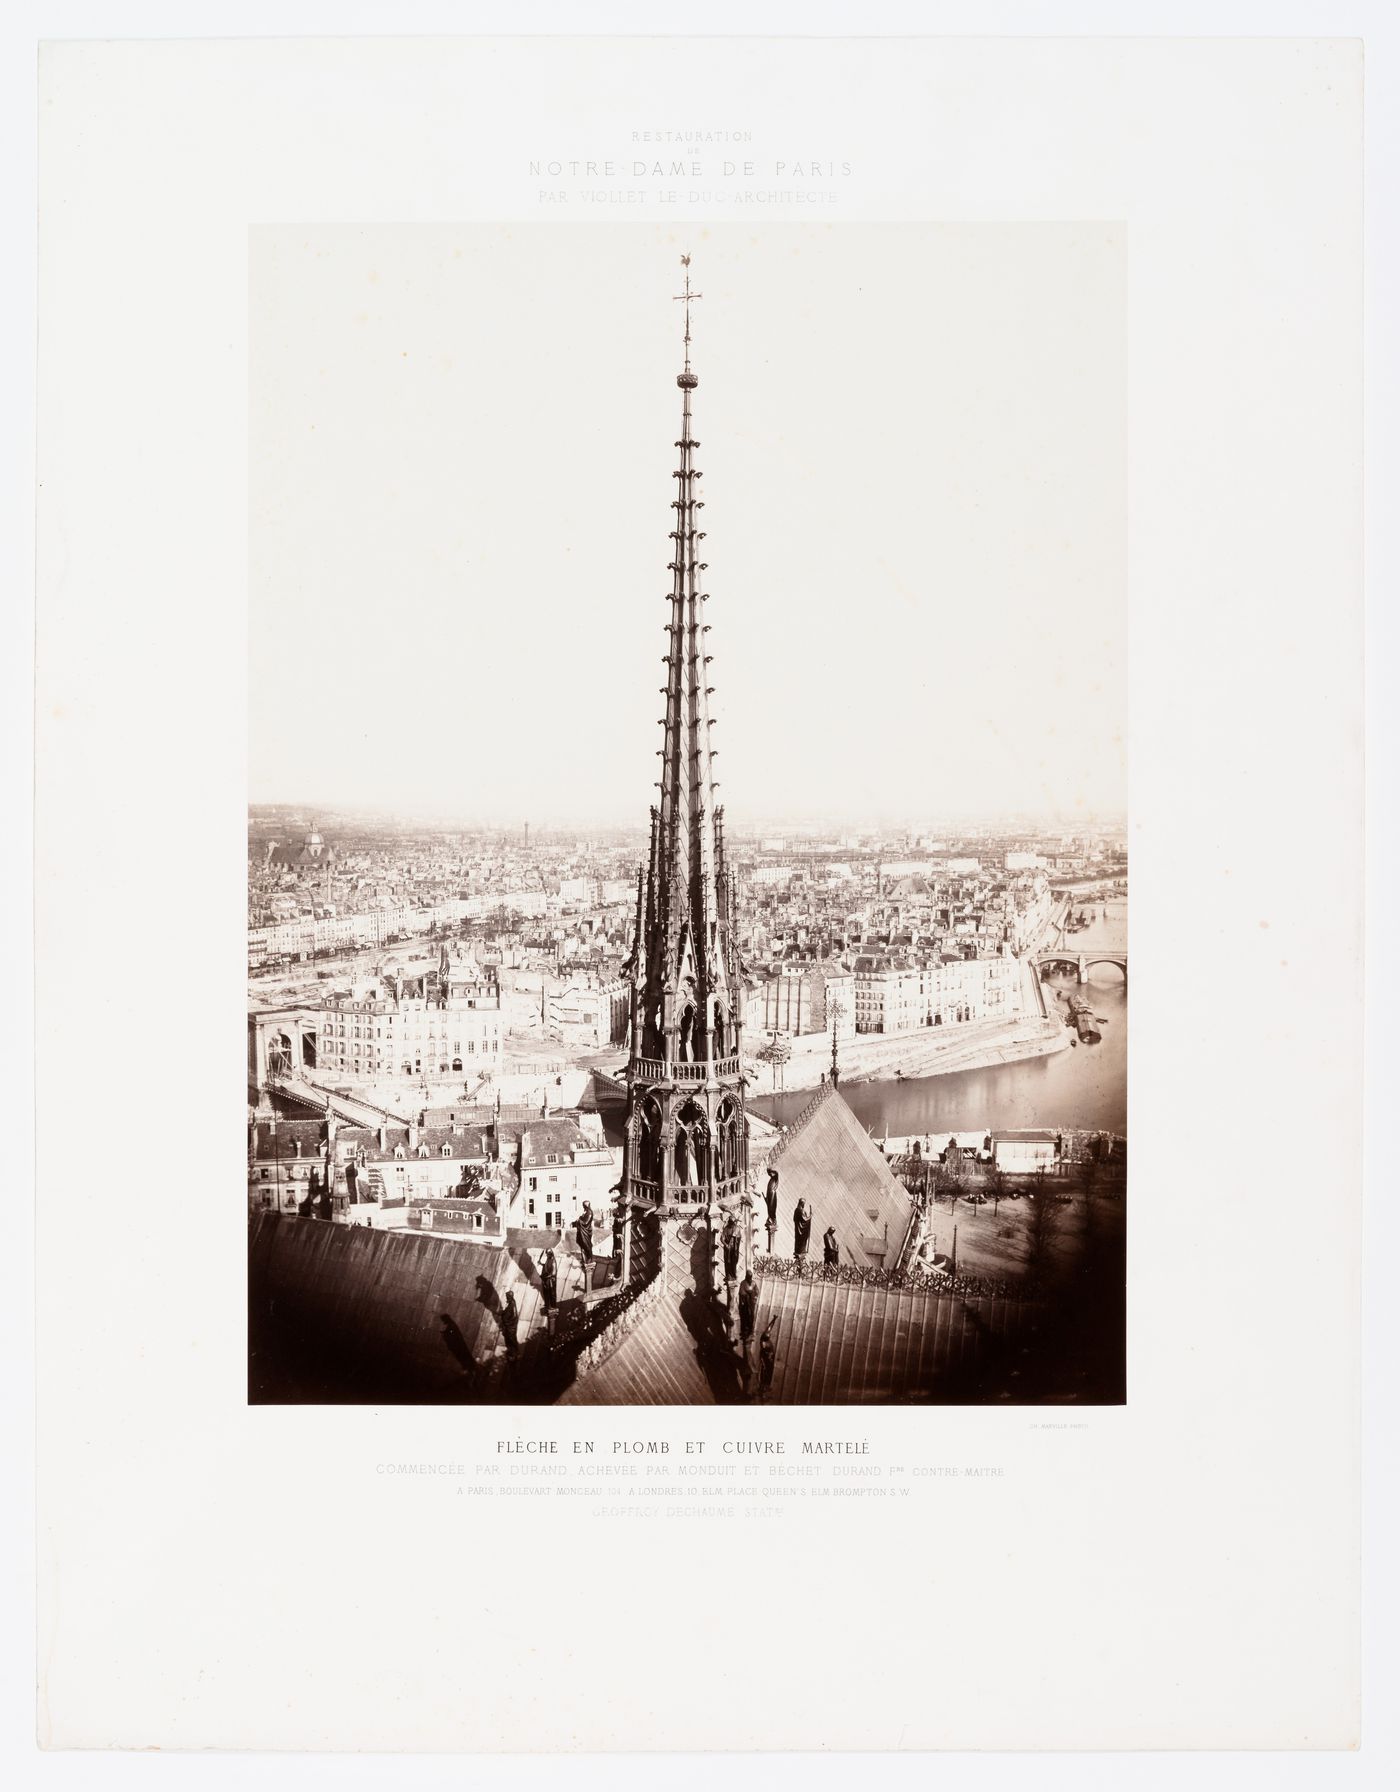 Restoration of Notre-Dame de Paris: View of steeple and Paris, France